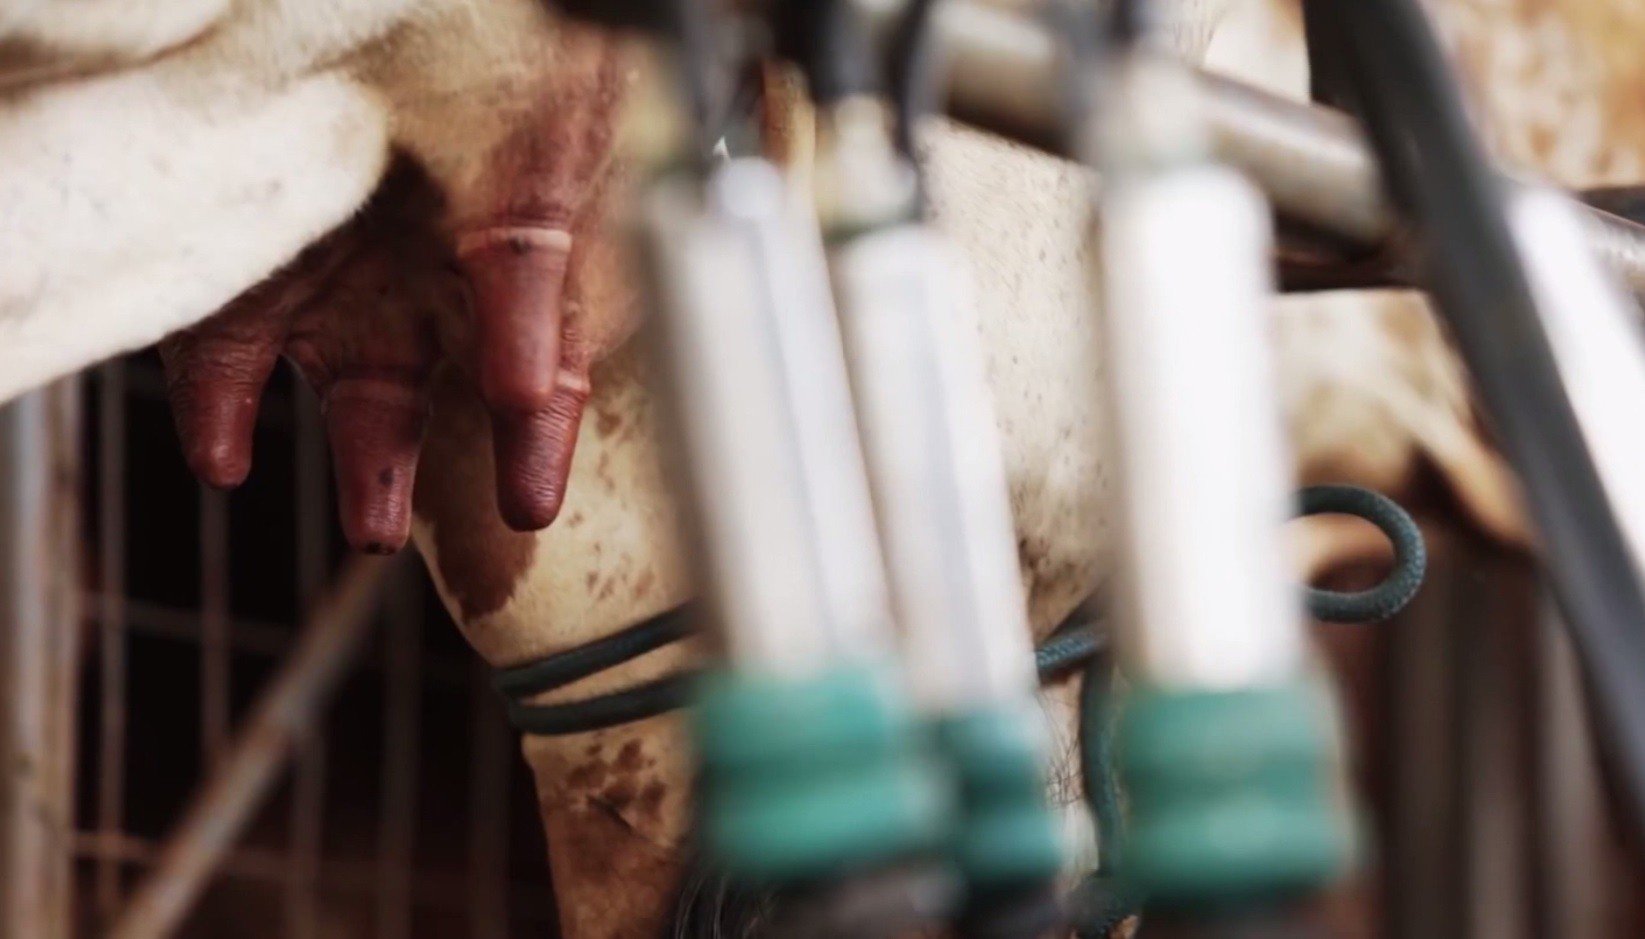 Detalhe da ordenha de vacas em sistema mecanizado. Foto: Divulgação